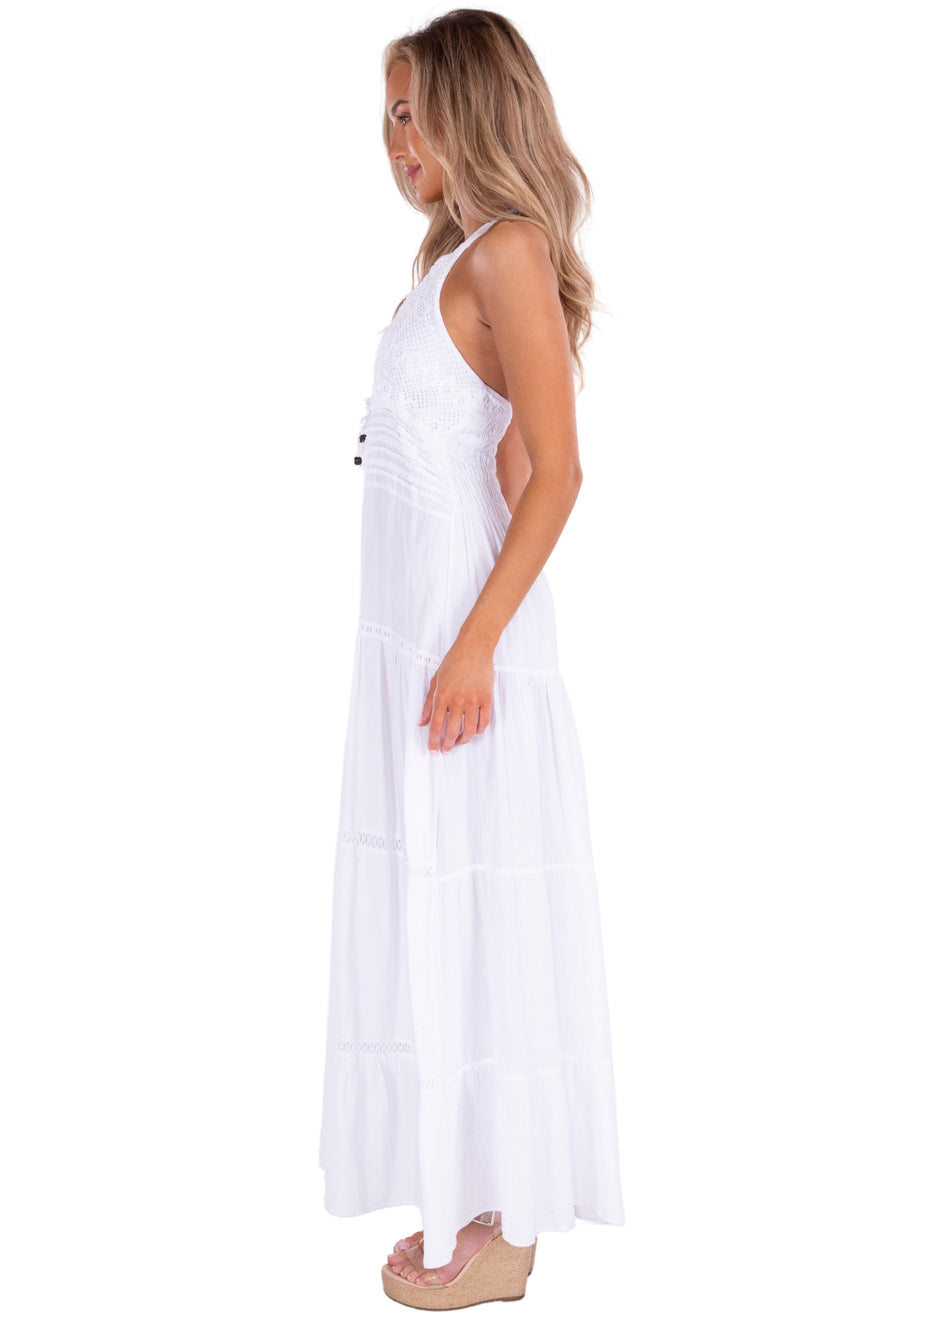 NW1505 - White Cotton Dress